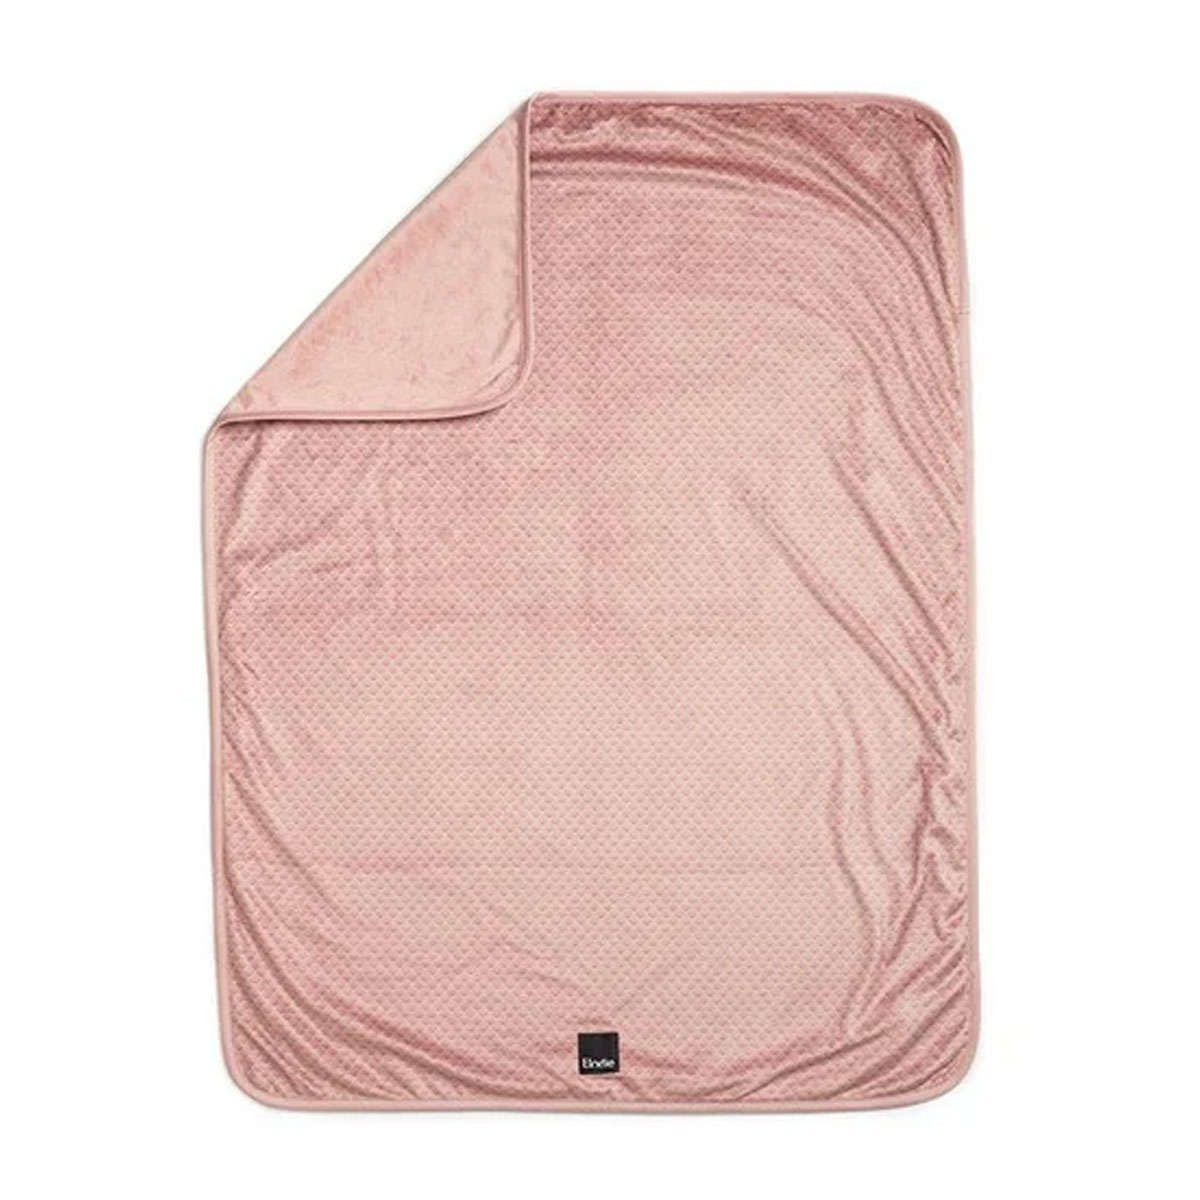 Κουβέρτα βελουτέ pearl velvet Pink Nouveau Elodie details